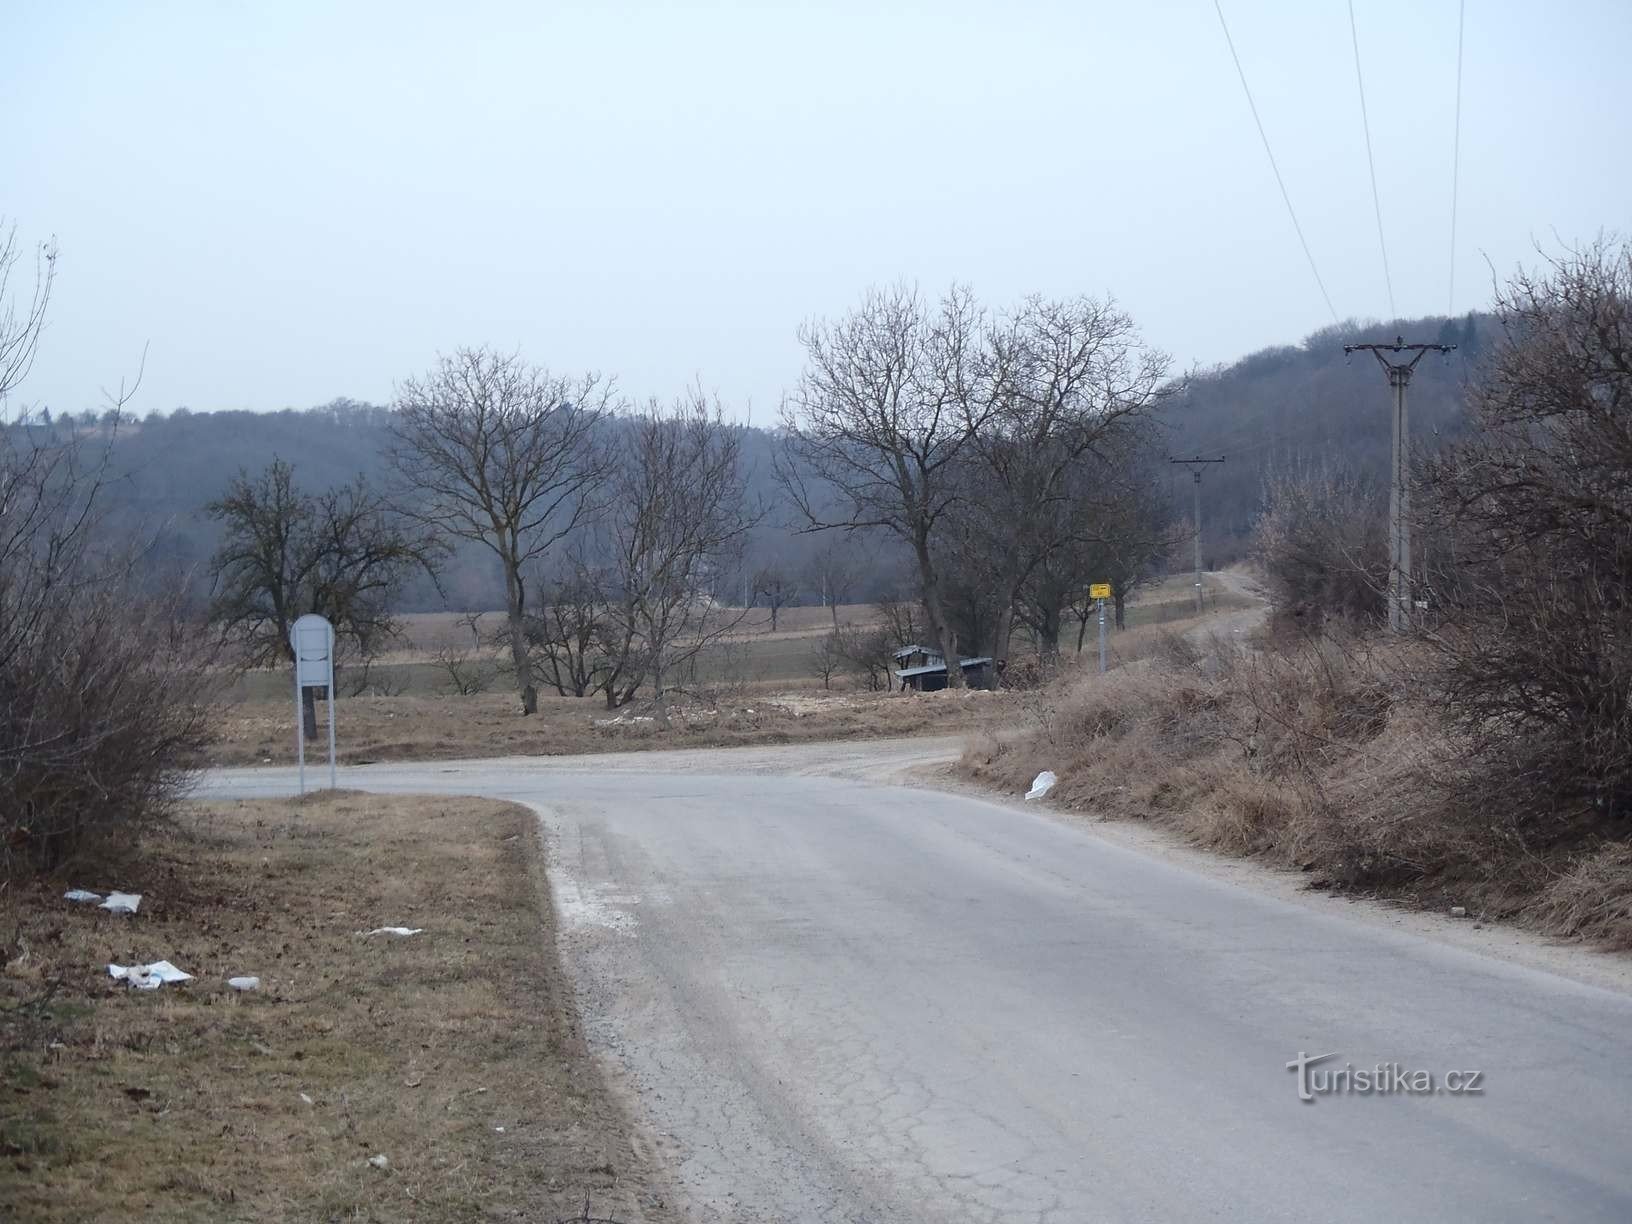 Rejse fra Podolí til Mariánské údolí - 6.2.2012. februar XNUMX